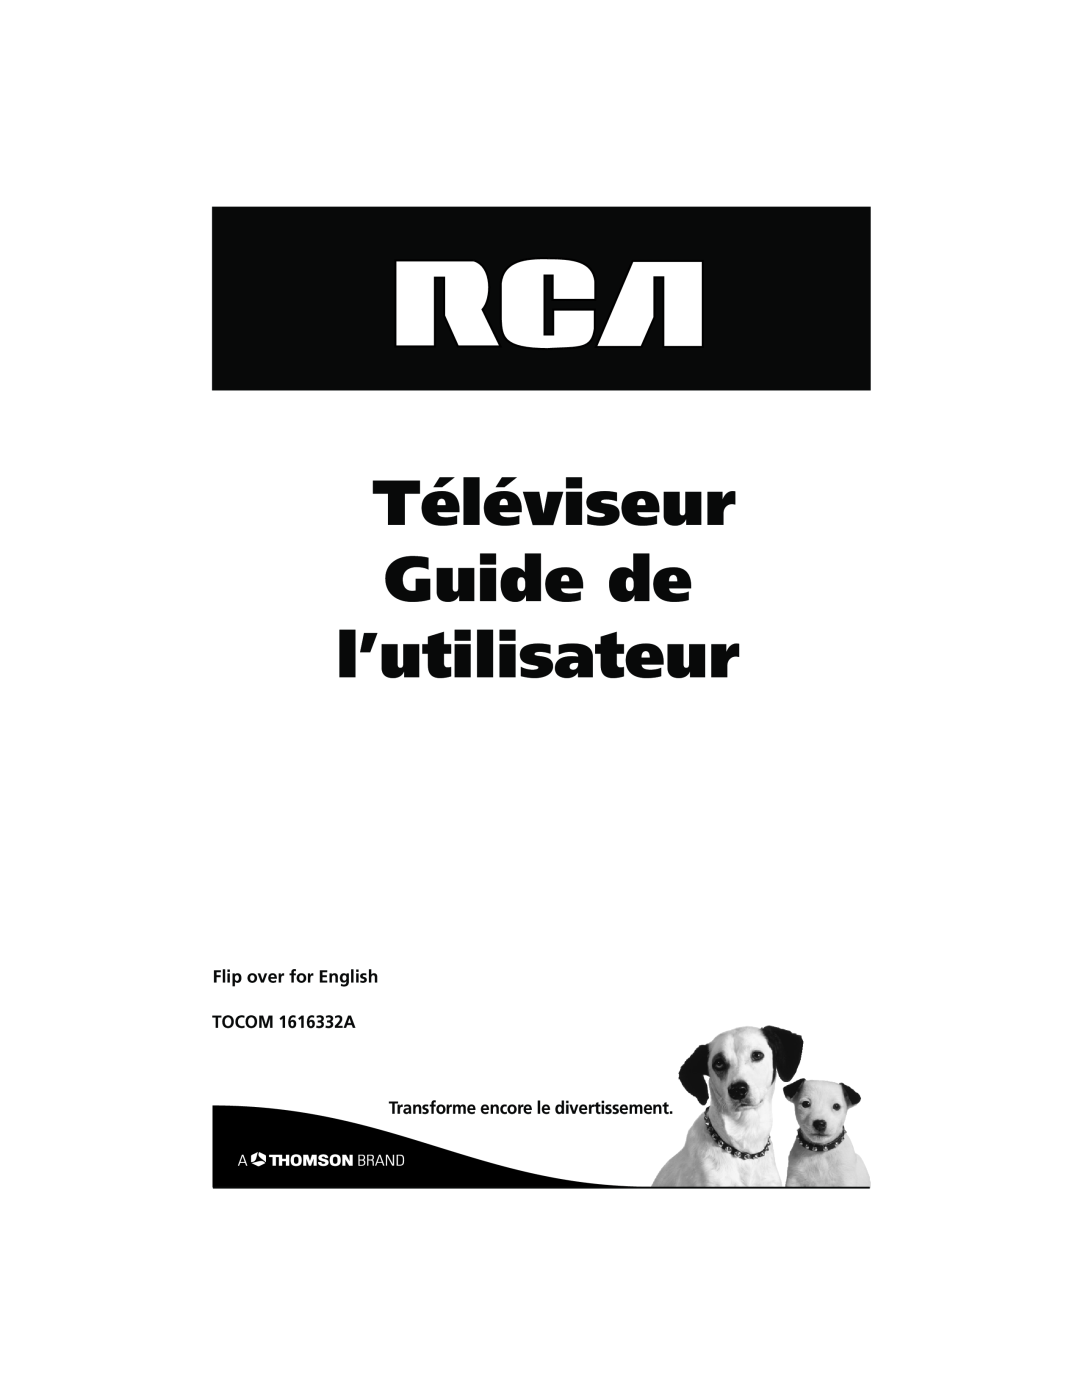 RCA 27R410T Téléviseur Guide de l’utilisateur, Flip over for English TOCOM 1616332A, Transforme encore le divertissement 